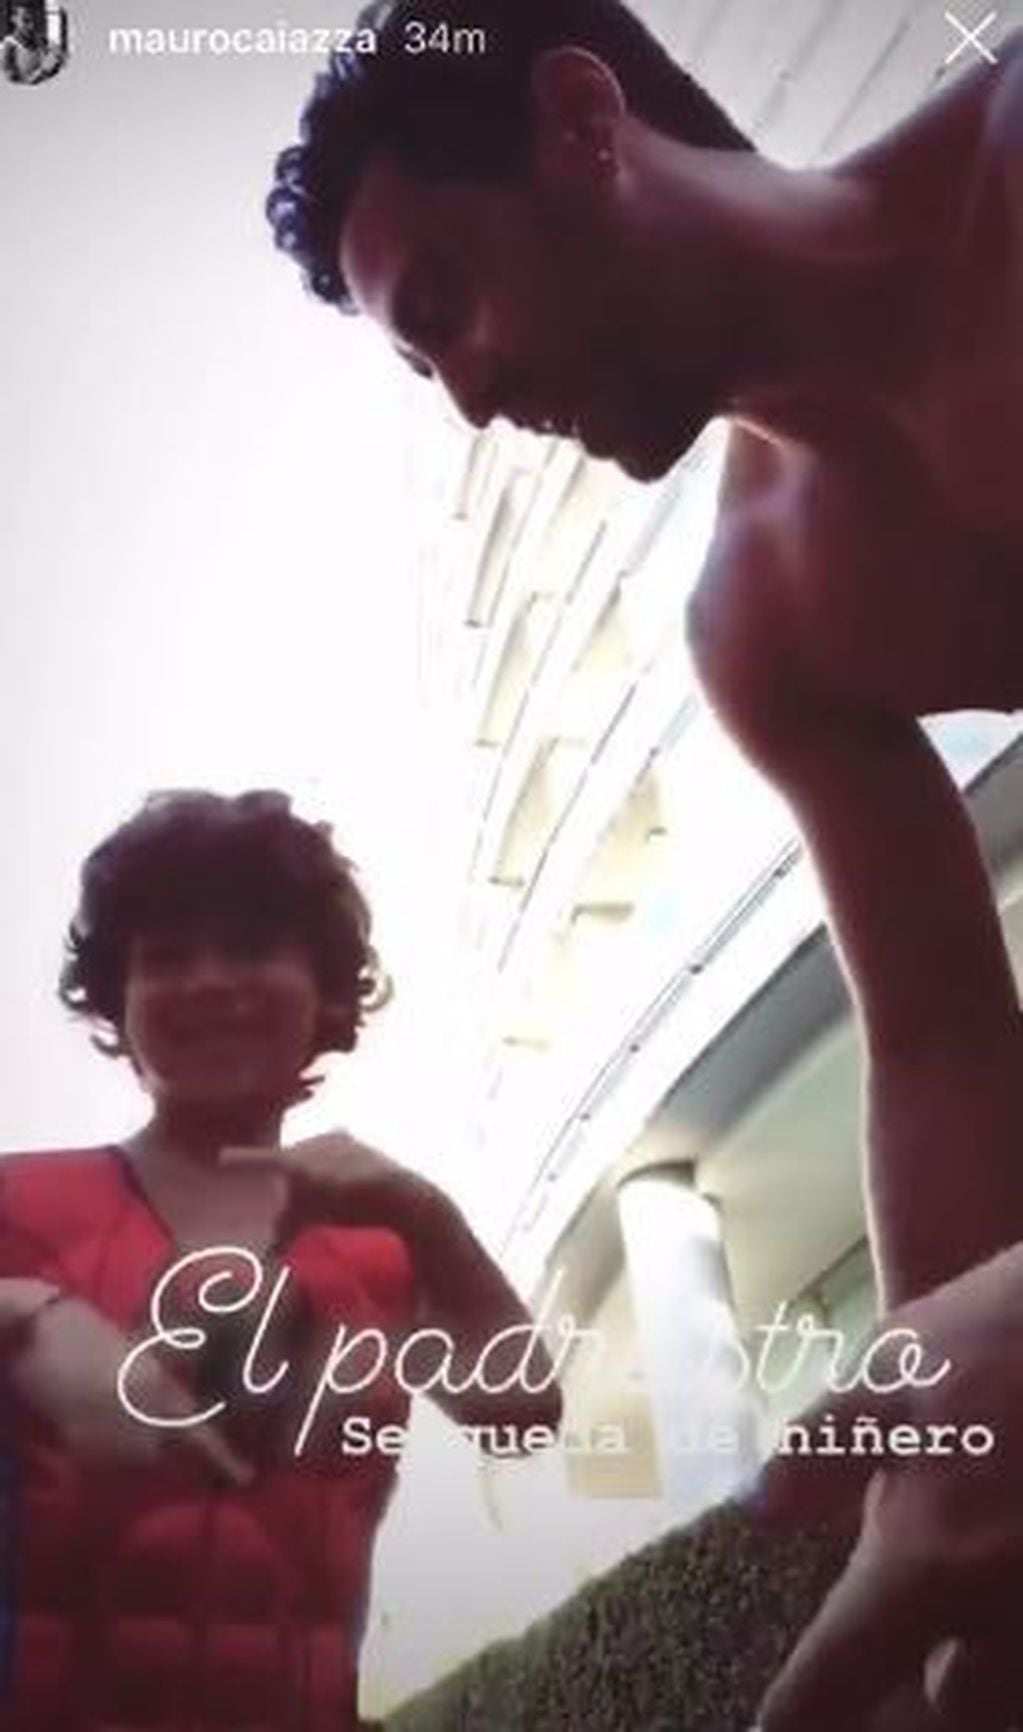 “El padrastro se queda de niñero”, escribió Barón en un divertido video (Instagram).